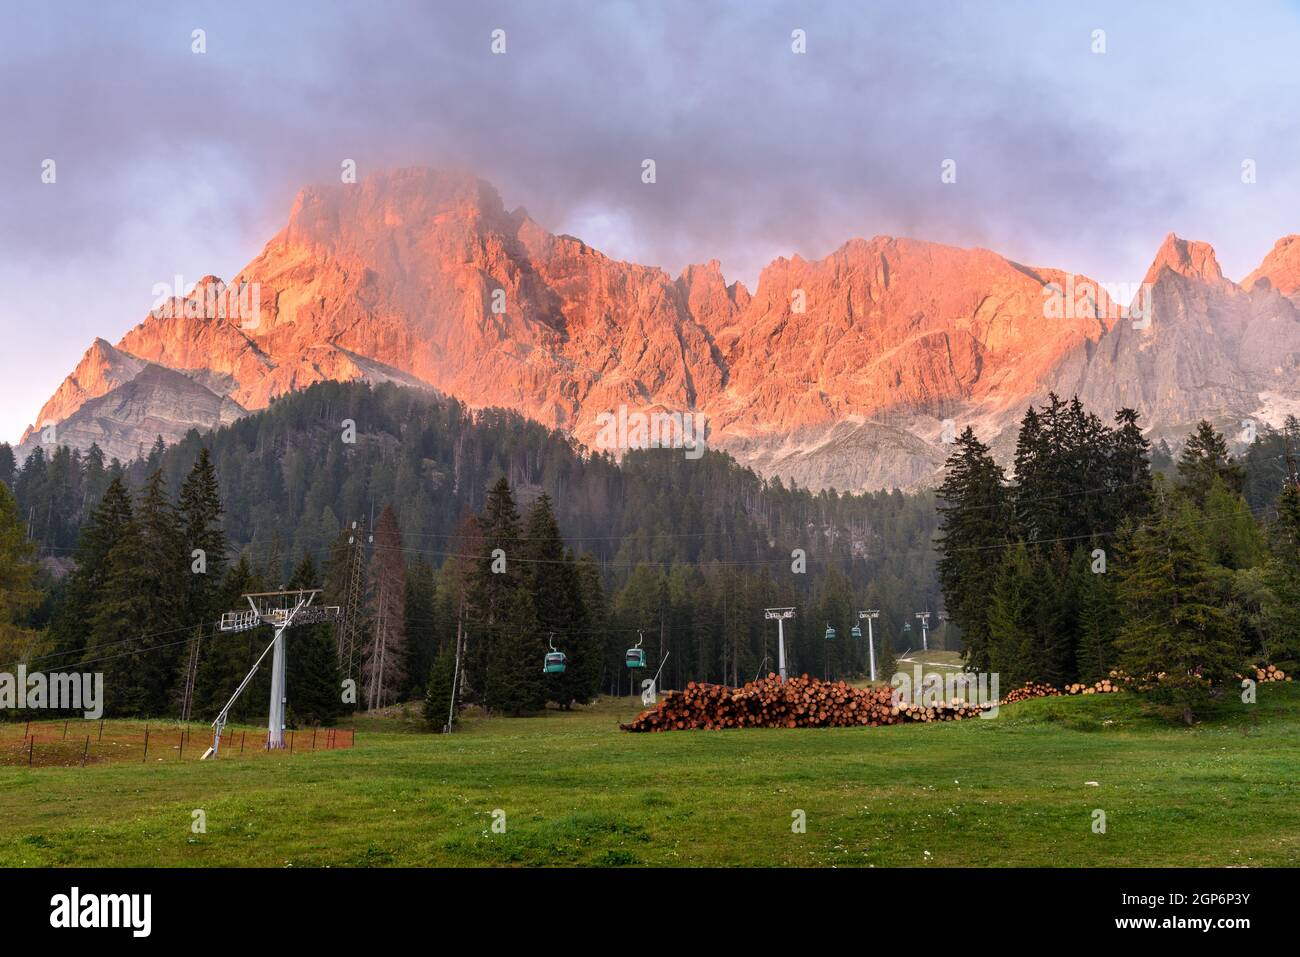 Pico rocoso en los Alpes Europeos cálidamente iluminado por un sol que se pone en una noche de otoño niebla. Los teleféricos que conducen a la montaña son visibles en primer plano Foto de stock